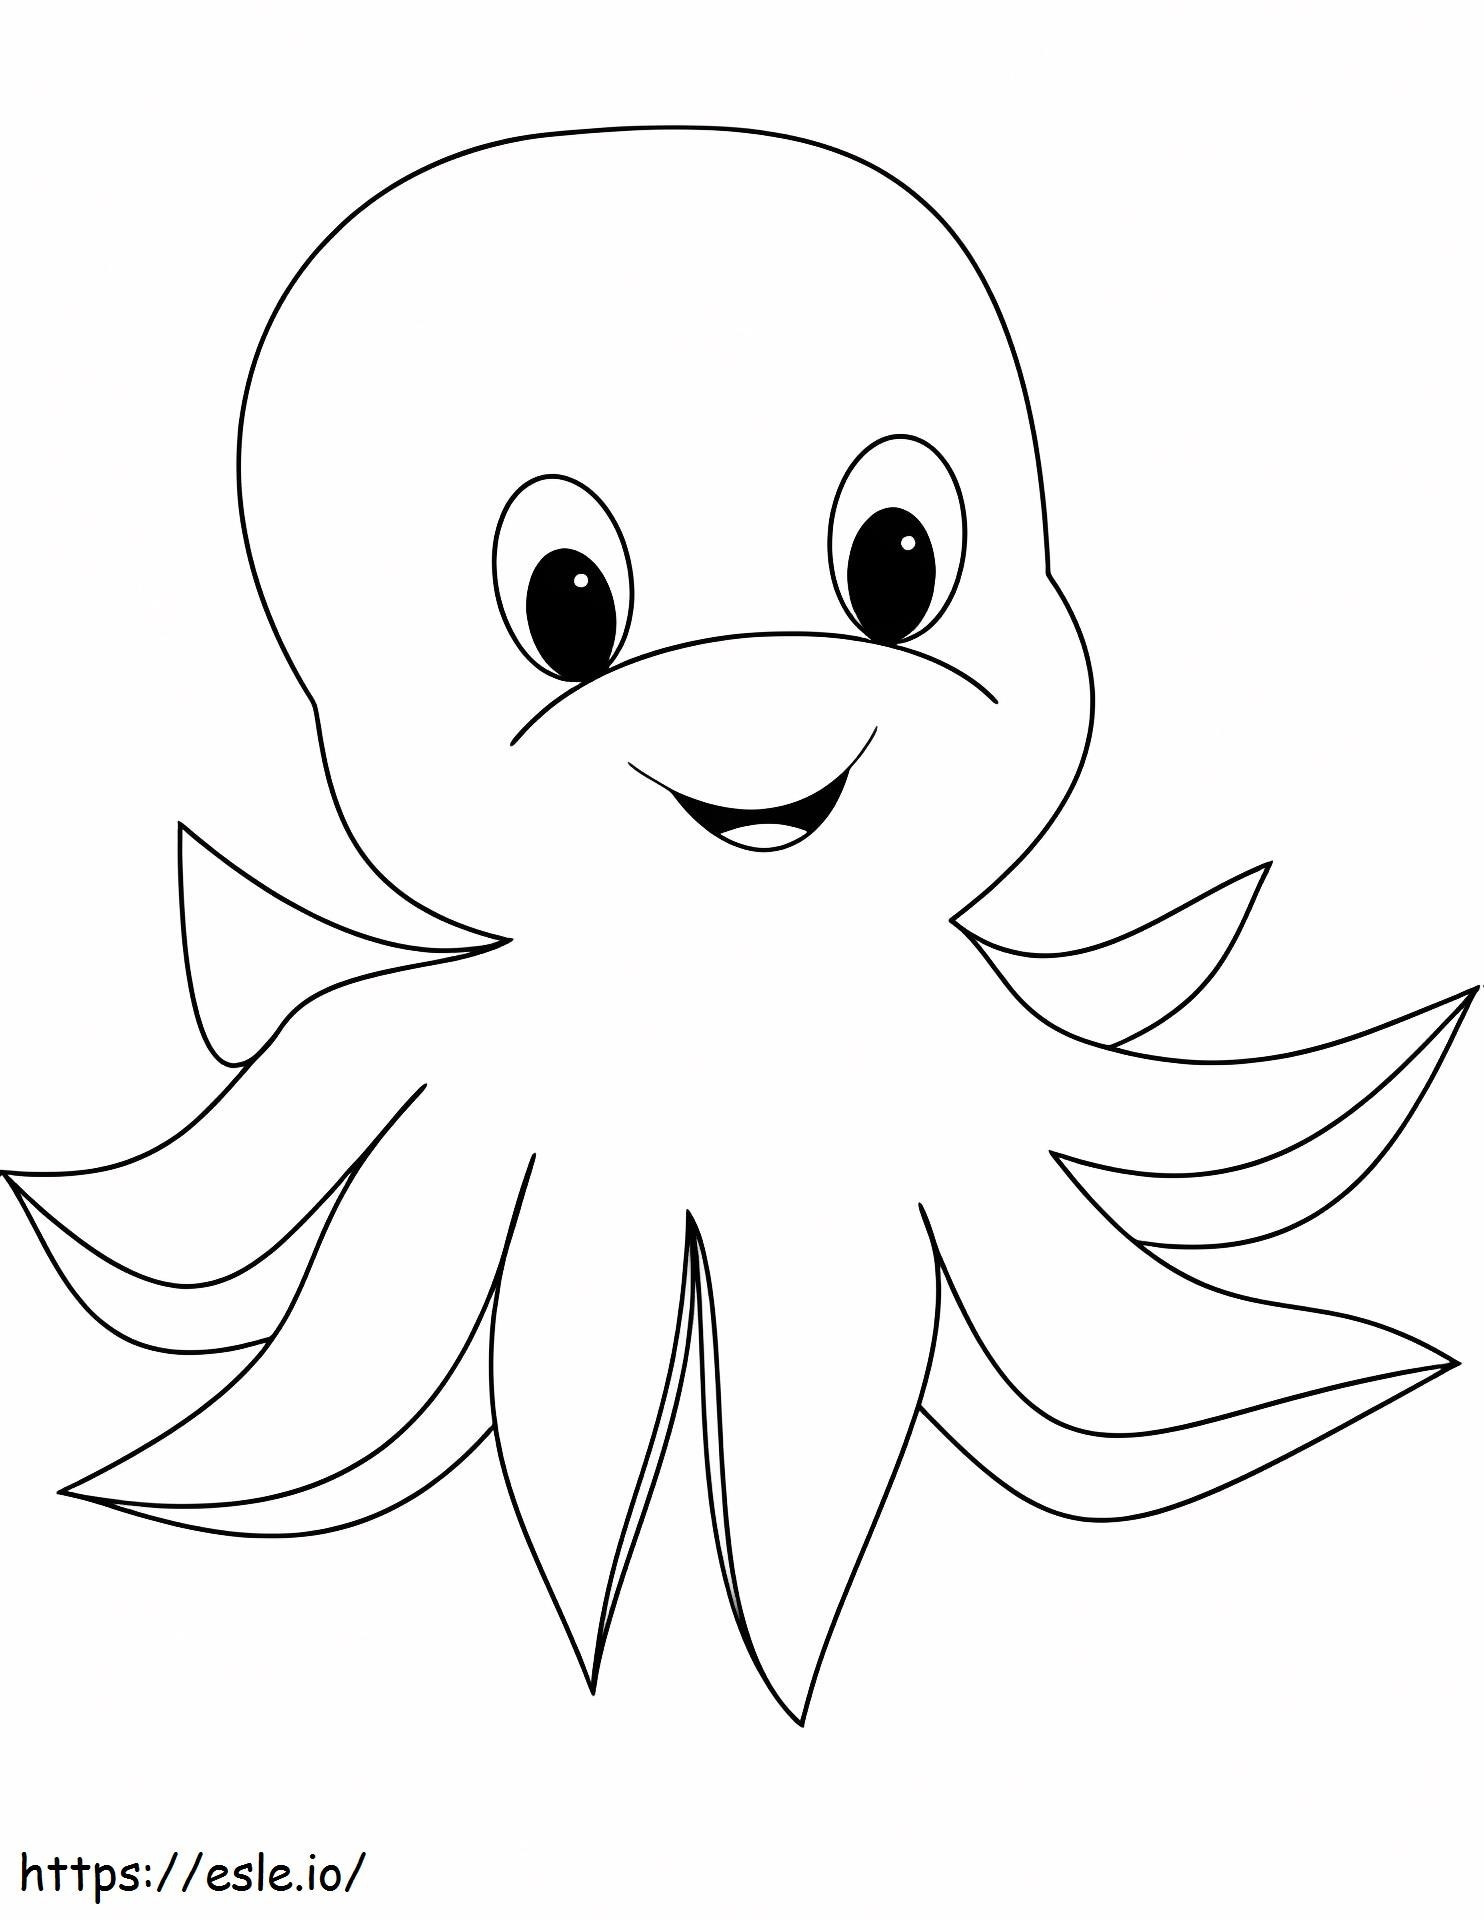 1559547416_Vauvan kasvot Octopus A4 värityskuva